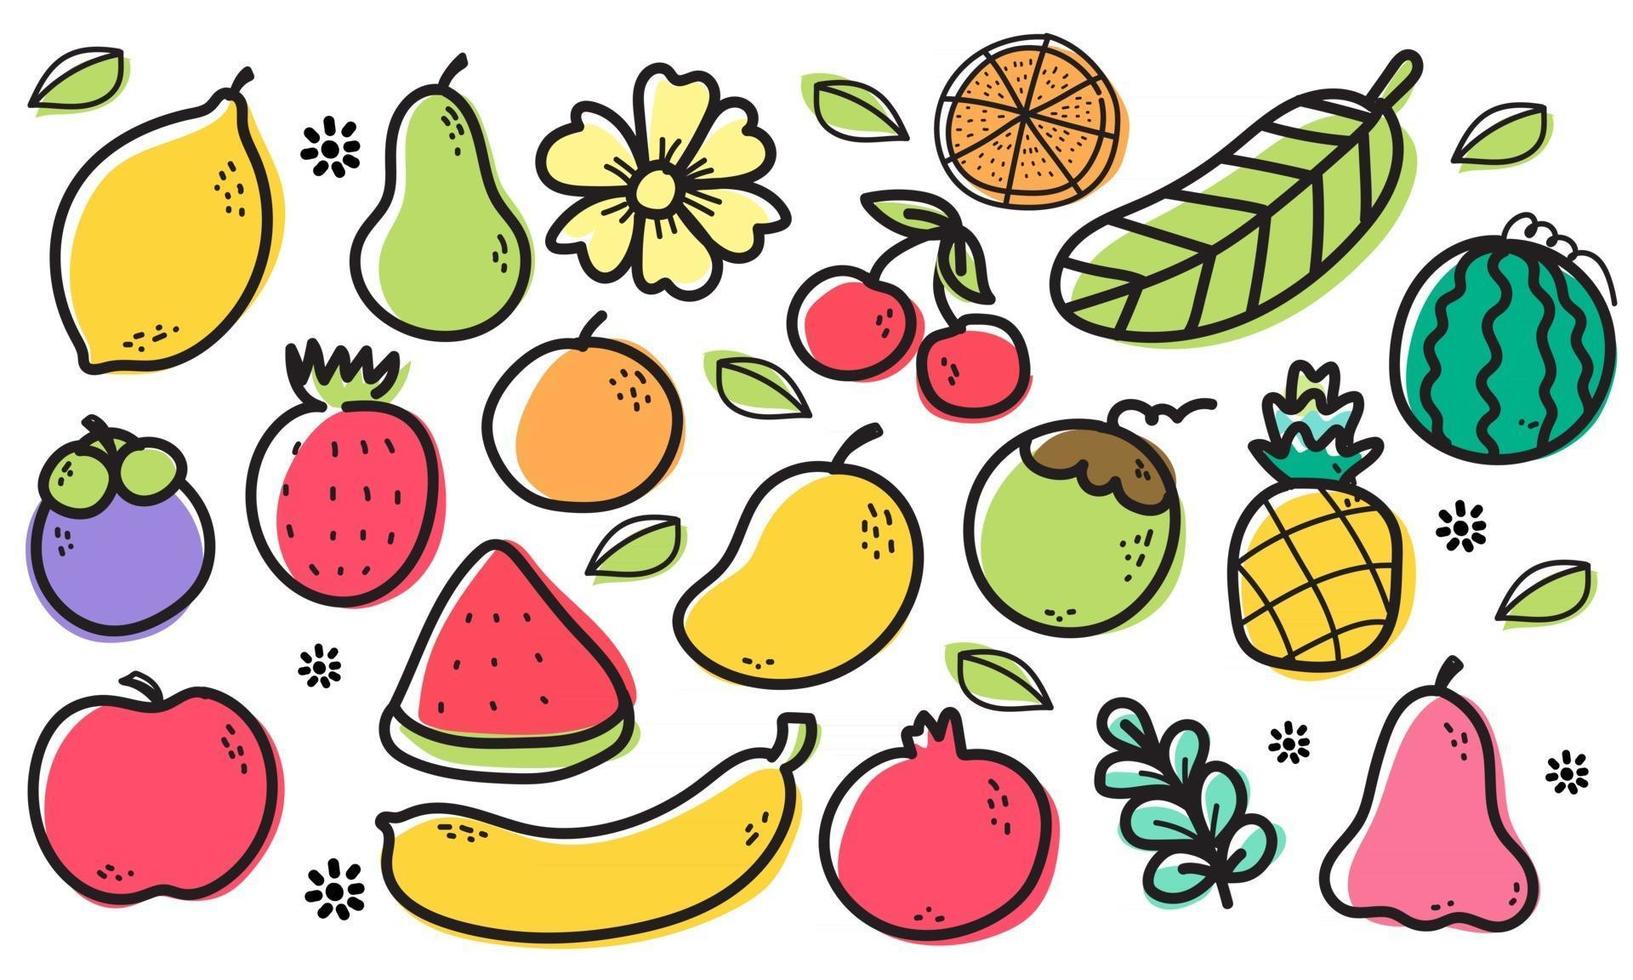 naadloze patroon fruit, sinaasappel, banaan, granaatappel, mangosteen, aardbei, ananas, watermeloen, citroen, avocado, kokosnoot, roze appel, kers, appel, bloem en blad op witte achtergrond. vector